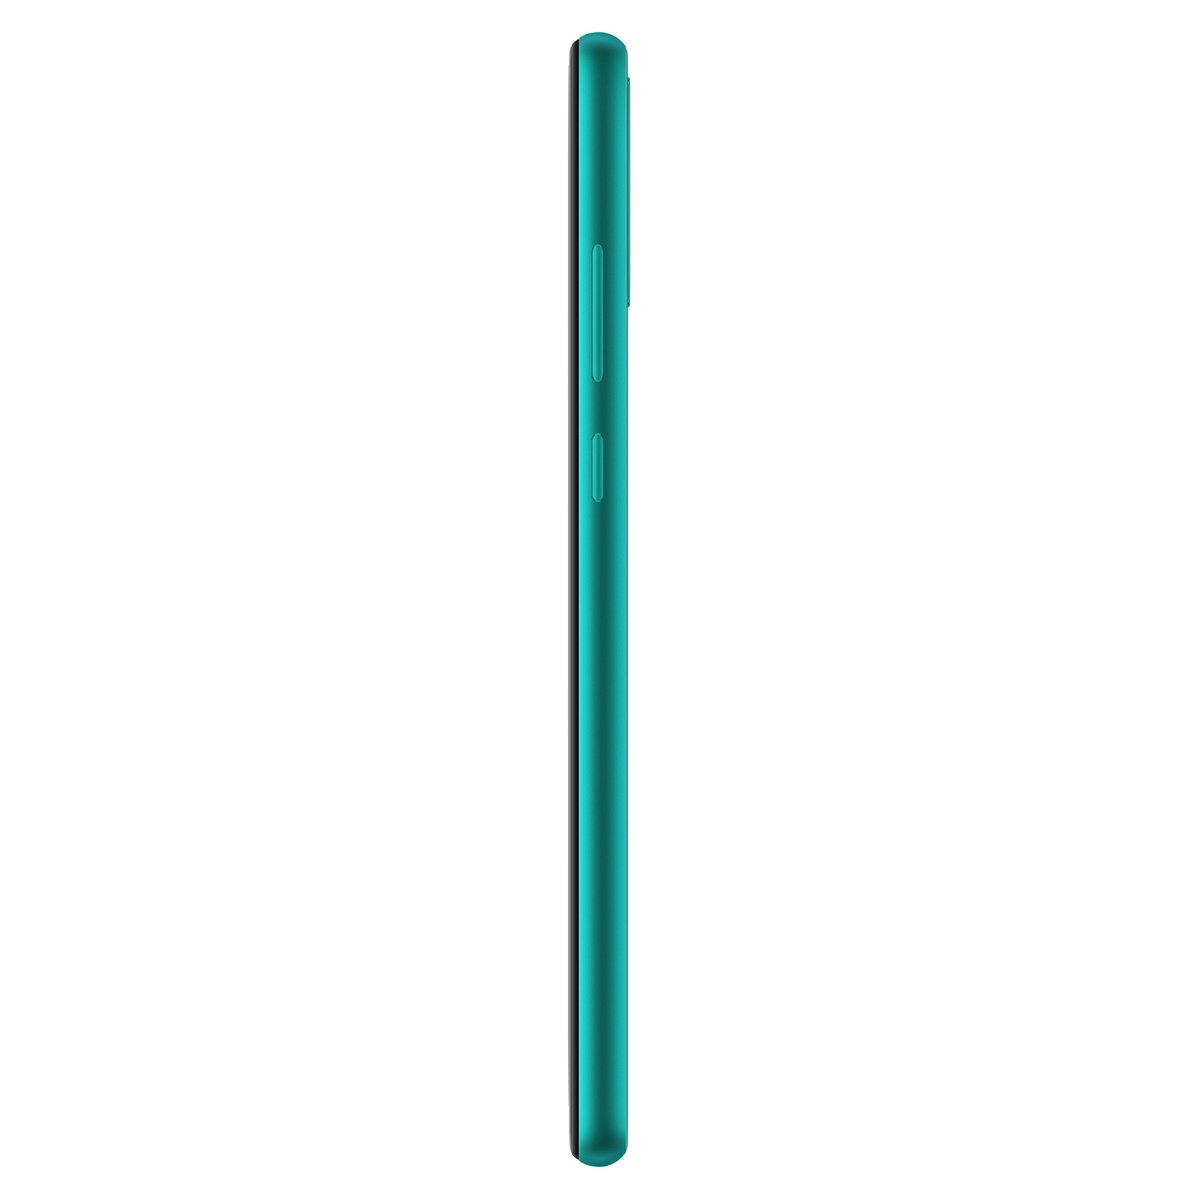 Huawei Y6p 64GB Emerald Green